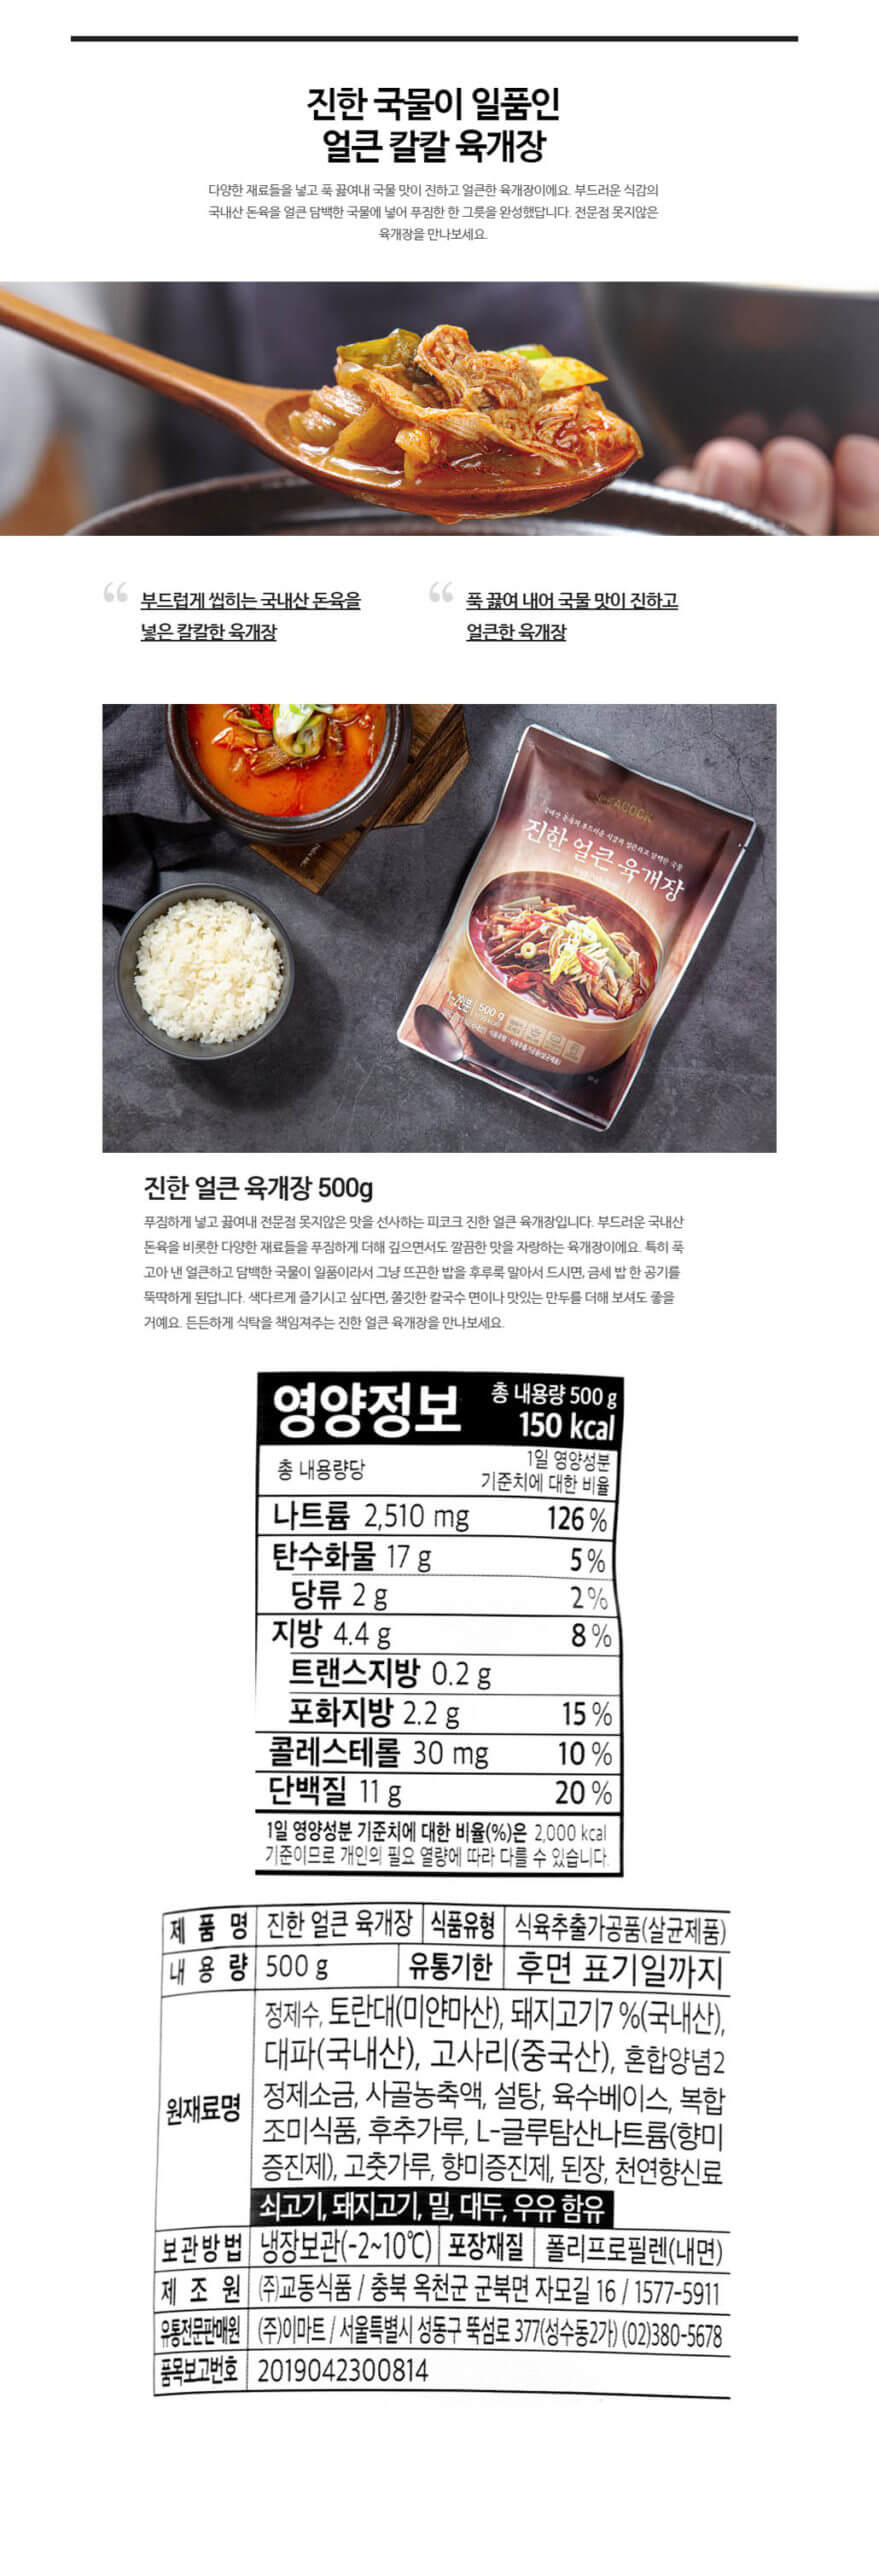 韓國食品-[피코크 Peacock] 진한얼큰육개장 500g (돼지고기)